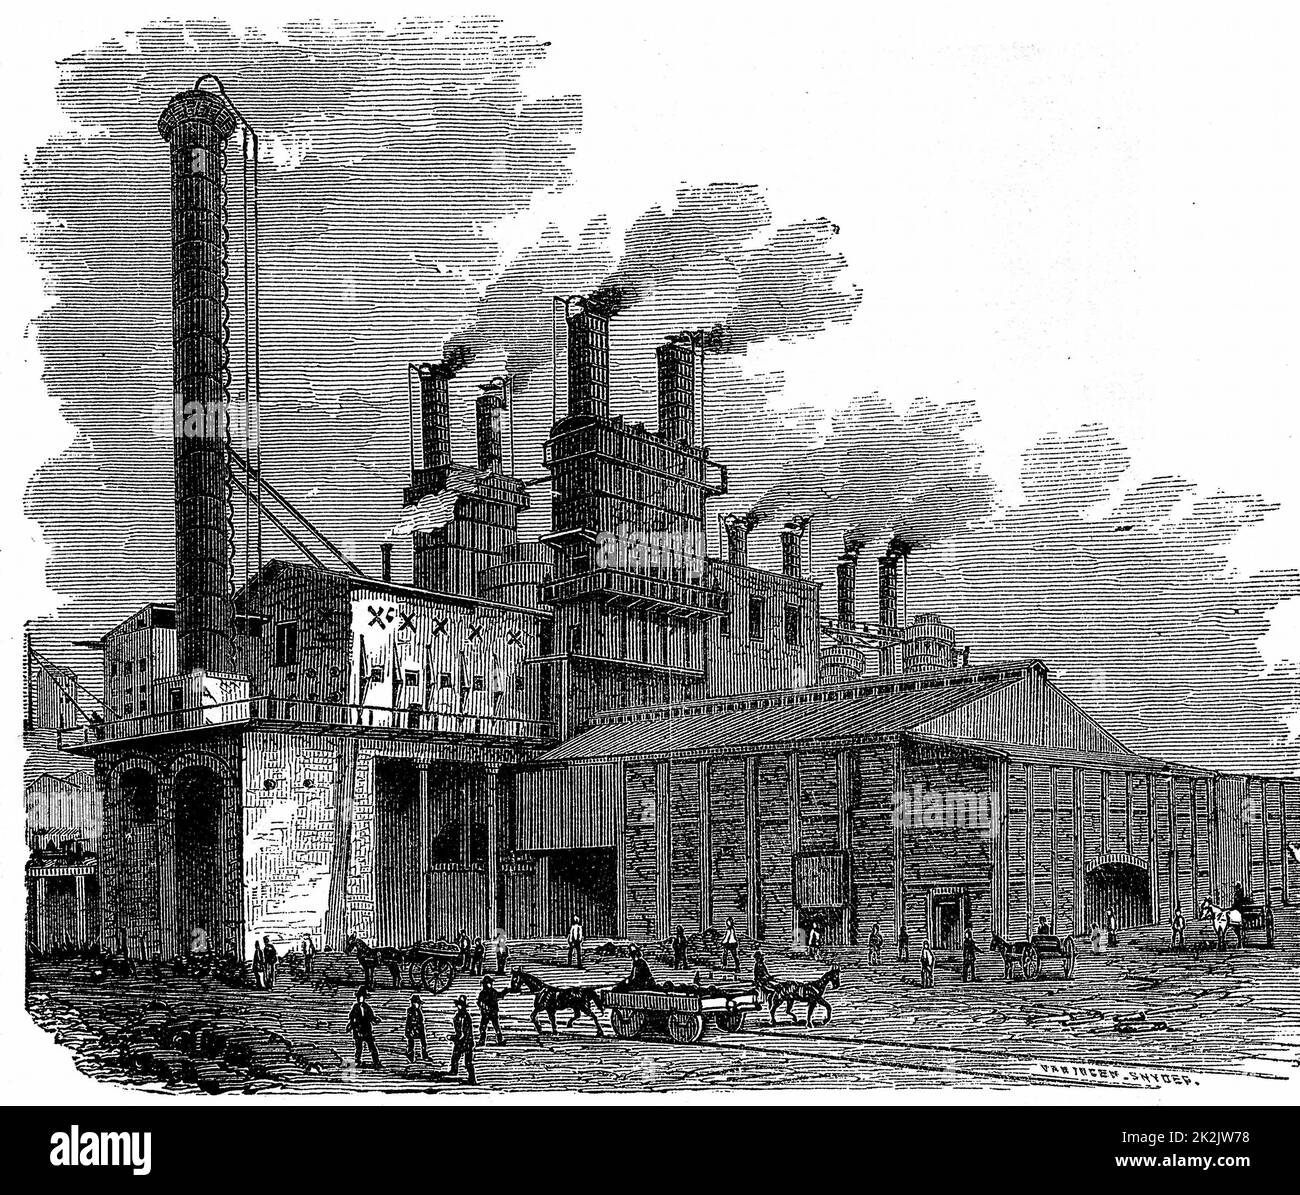 Industrial century. Промышленная революция в Англии 19 век. Сталелитейный завод в Англии 19 века. Индустриальная революция в Англии 19 век. Великобритания 19 век заводы.